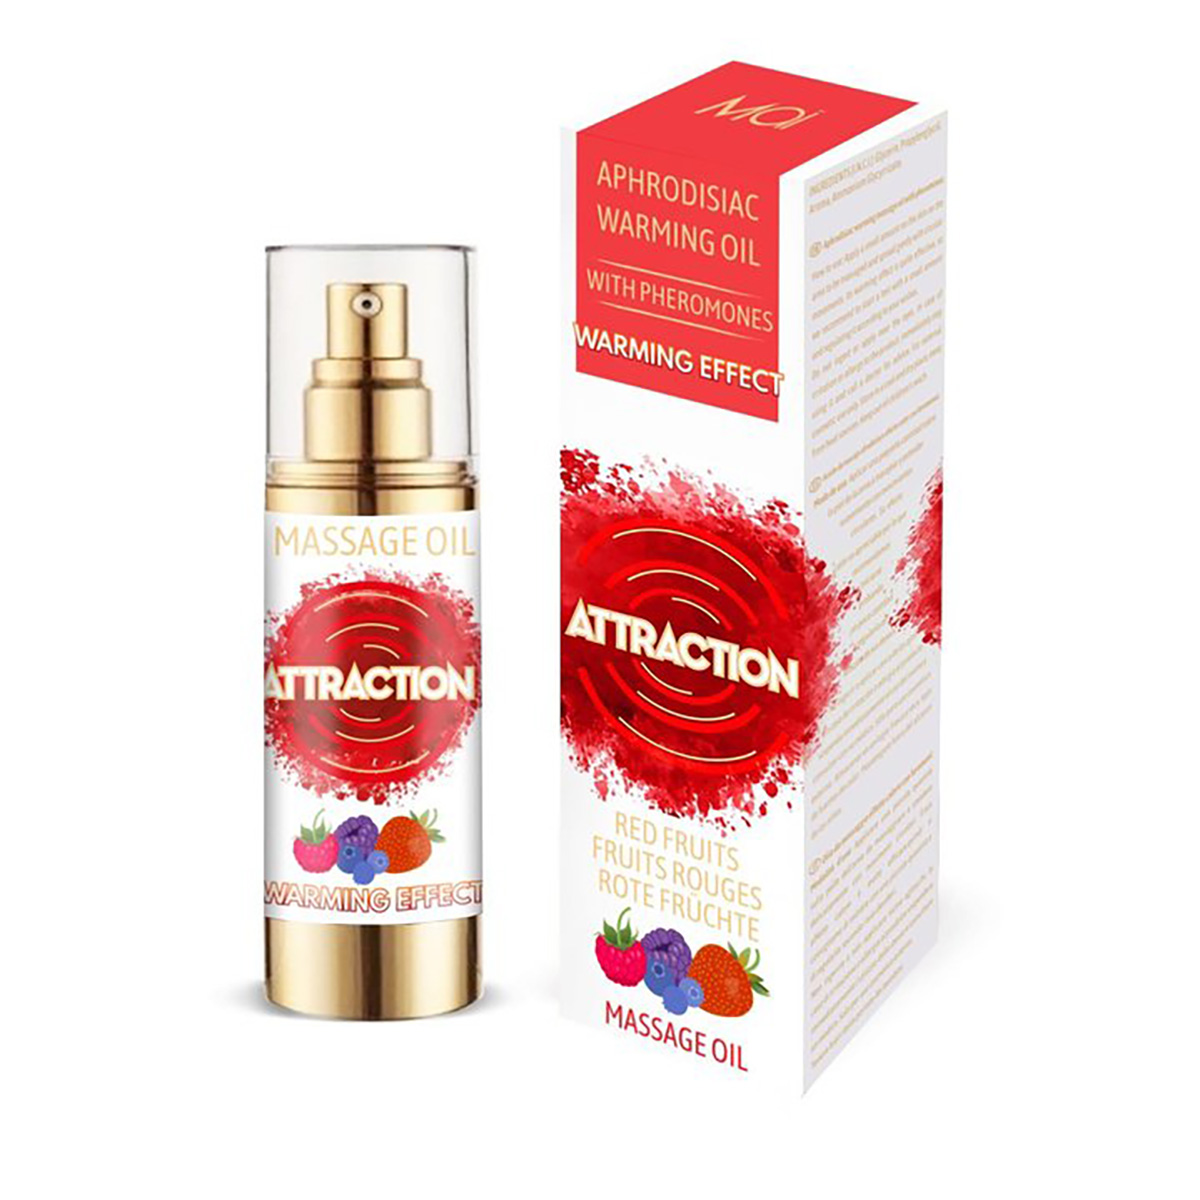 Mai Cosmetics Attraction Massage Oil - Разогревающее массажное масло с феромонами, 30 мл (красные фрукты)